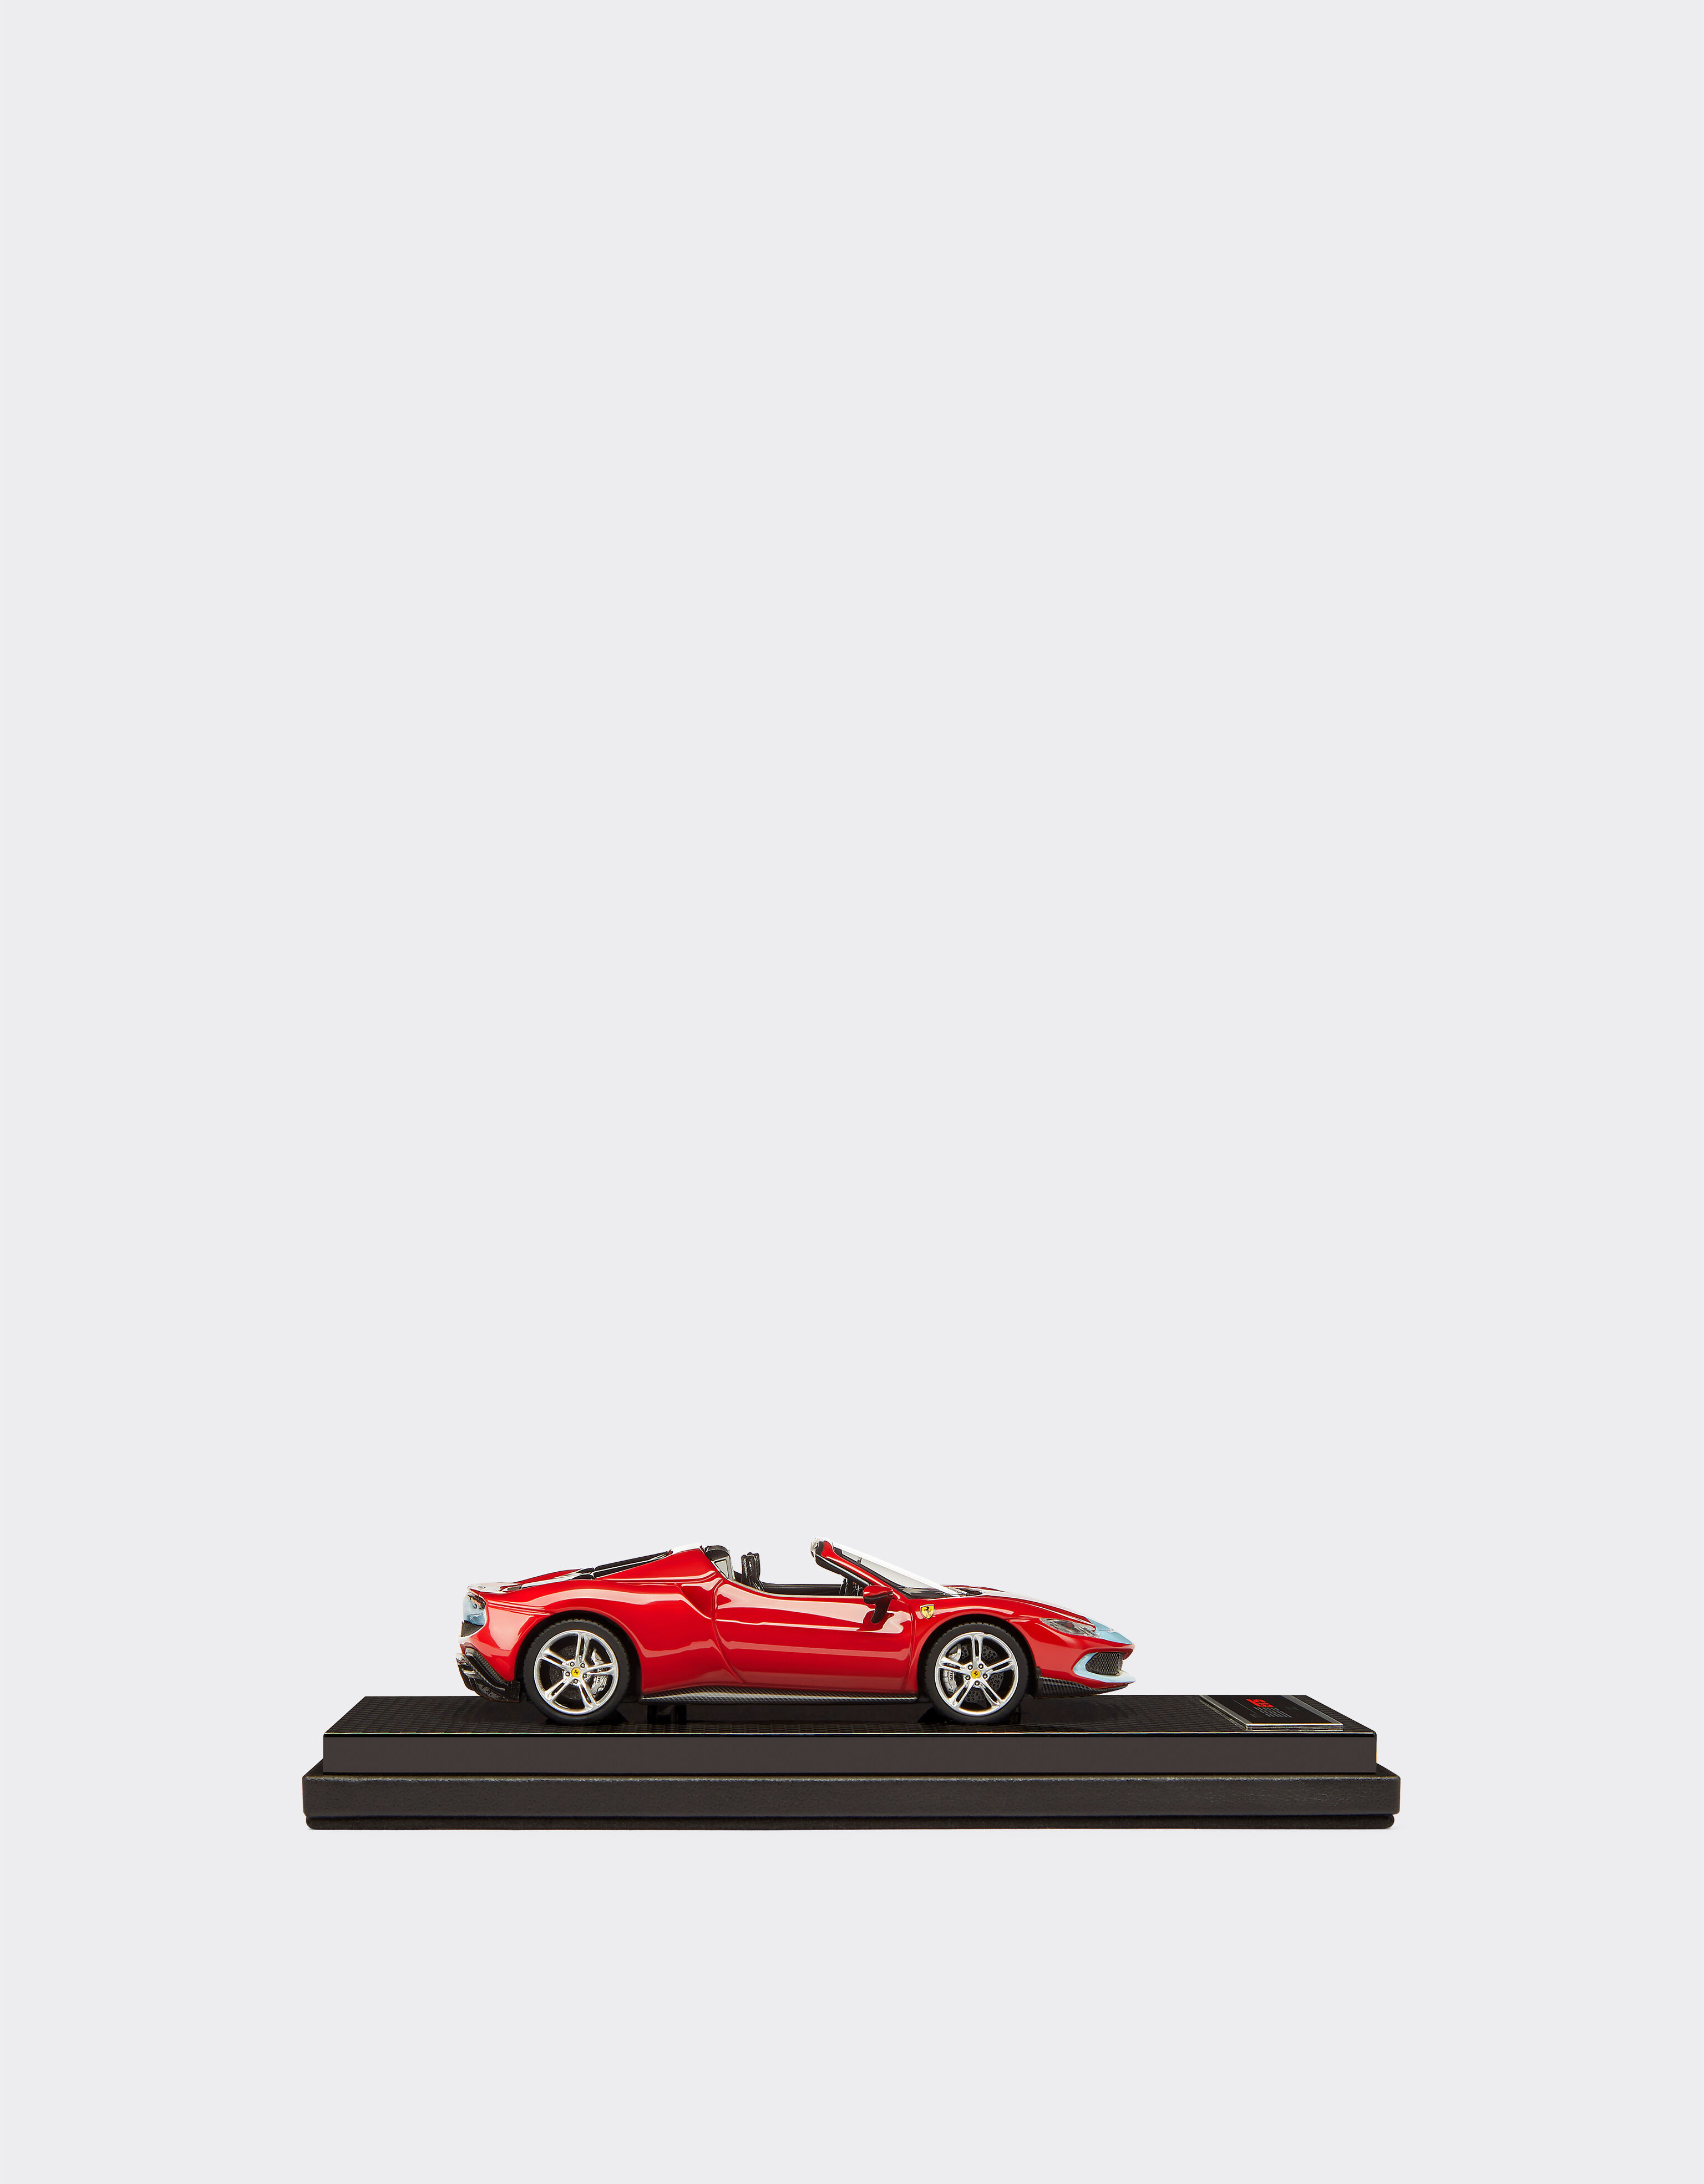 Ferrari Maqueta Ferrari 296 GTS a escala 1:43 Rosso Corsa 20168f